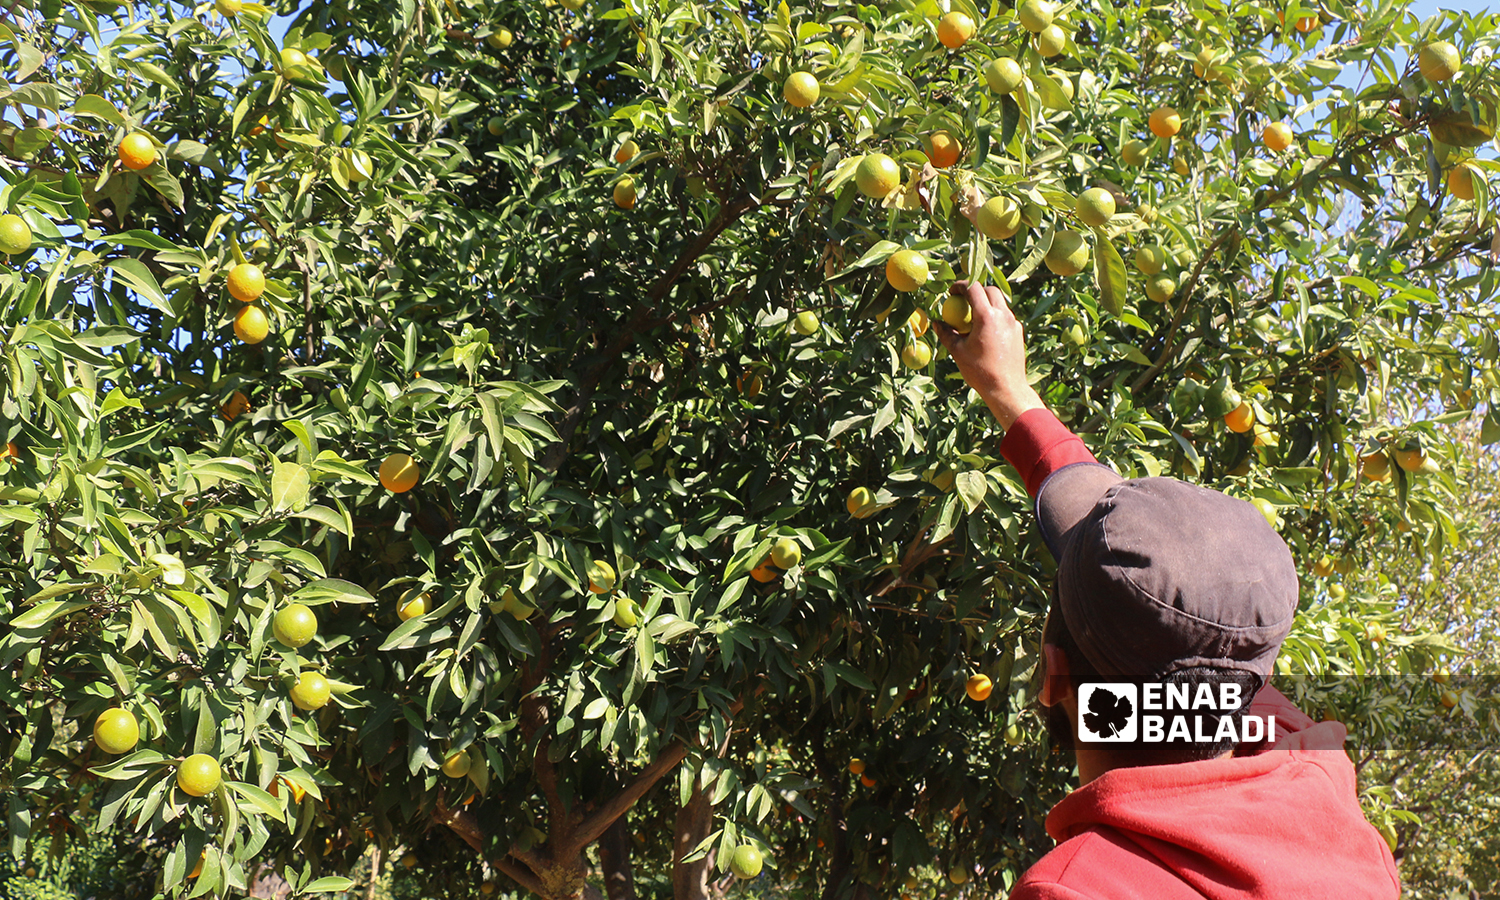 شاب يقطف من ثمار شجرة البرتقال في قرية العلياني بريف إدلب الغربي 10 تشرين الثاني 2021 (عنب بلدي - إياد عبد الجواد)